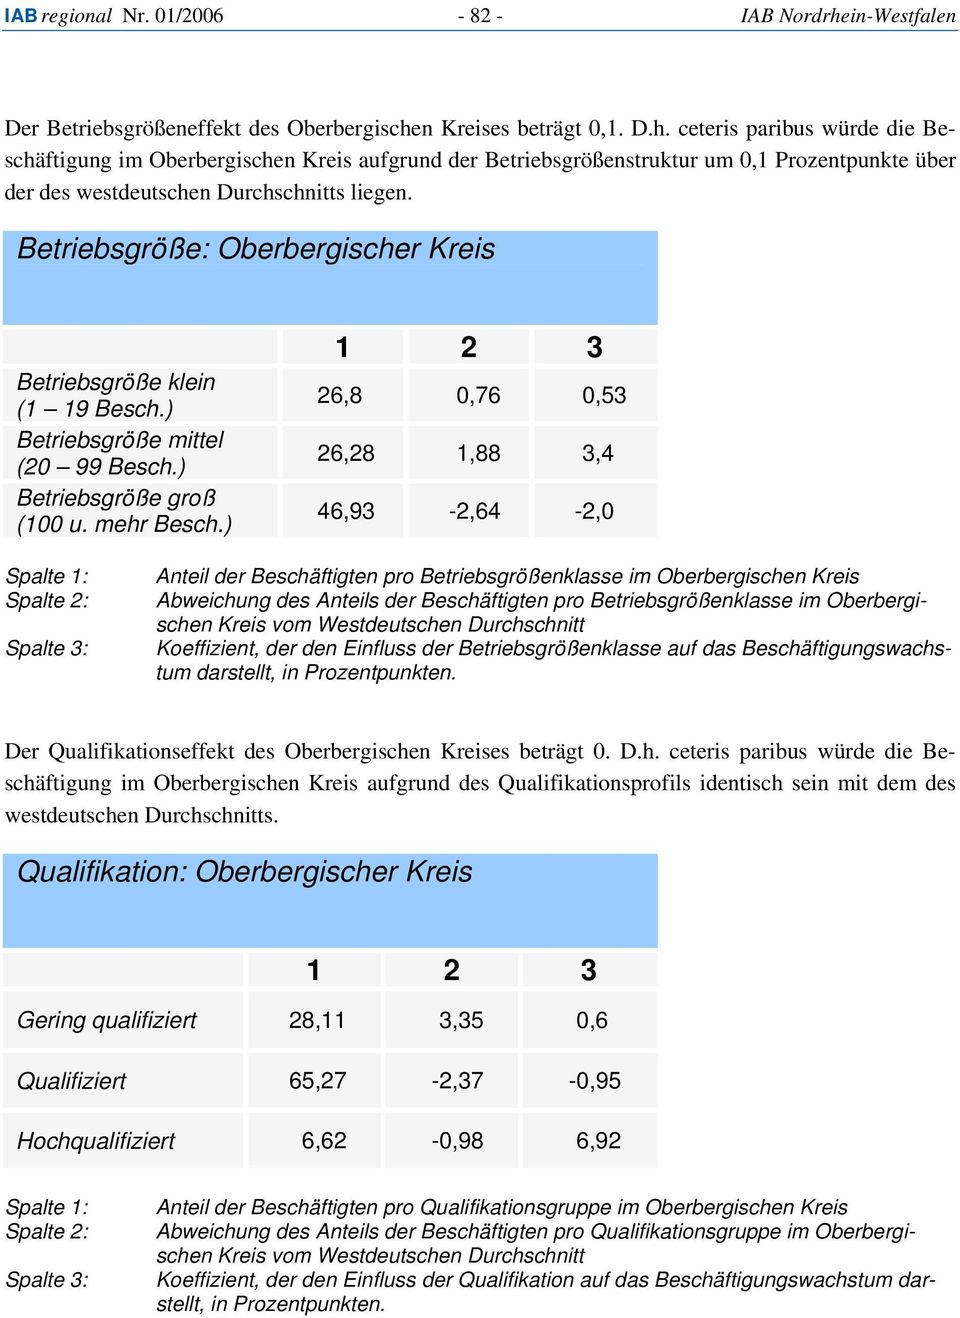 n Kreises beträgt 0,1. D.h. ceteris paribus würde die Beschäftigung im Oberbergischen Kreis aufgrund der Betriebsgrößenstruktur um 0,1 Prozentpunkte über der des westdeutschen Durchschnitts liegen.